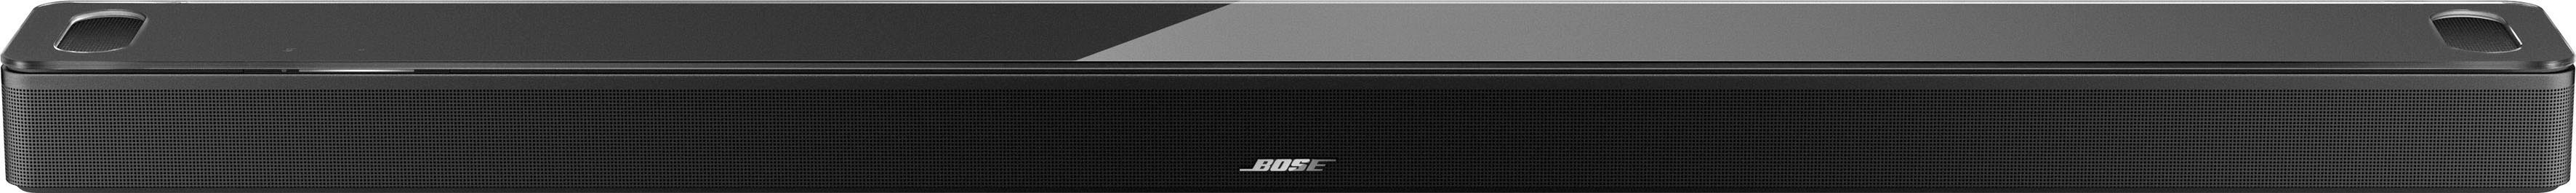 schwarz Alexa LAN Google Bose Smart mit Soundbar und Assistant) Soundbar 900 (Ethernet), (Bluetooth, Amazon